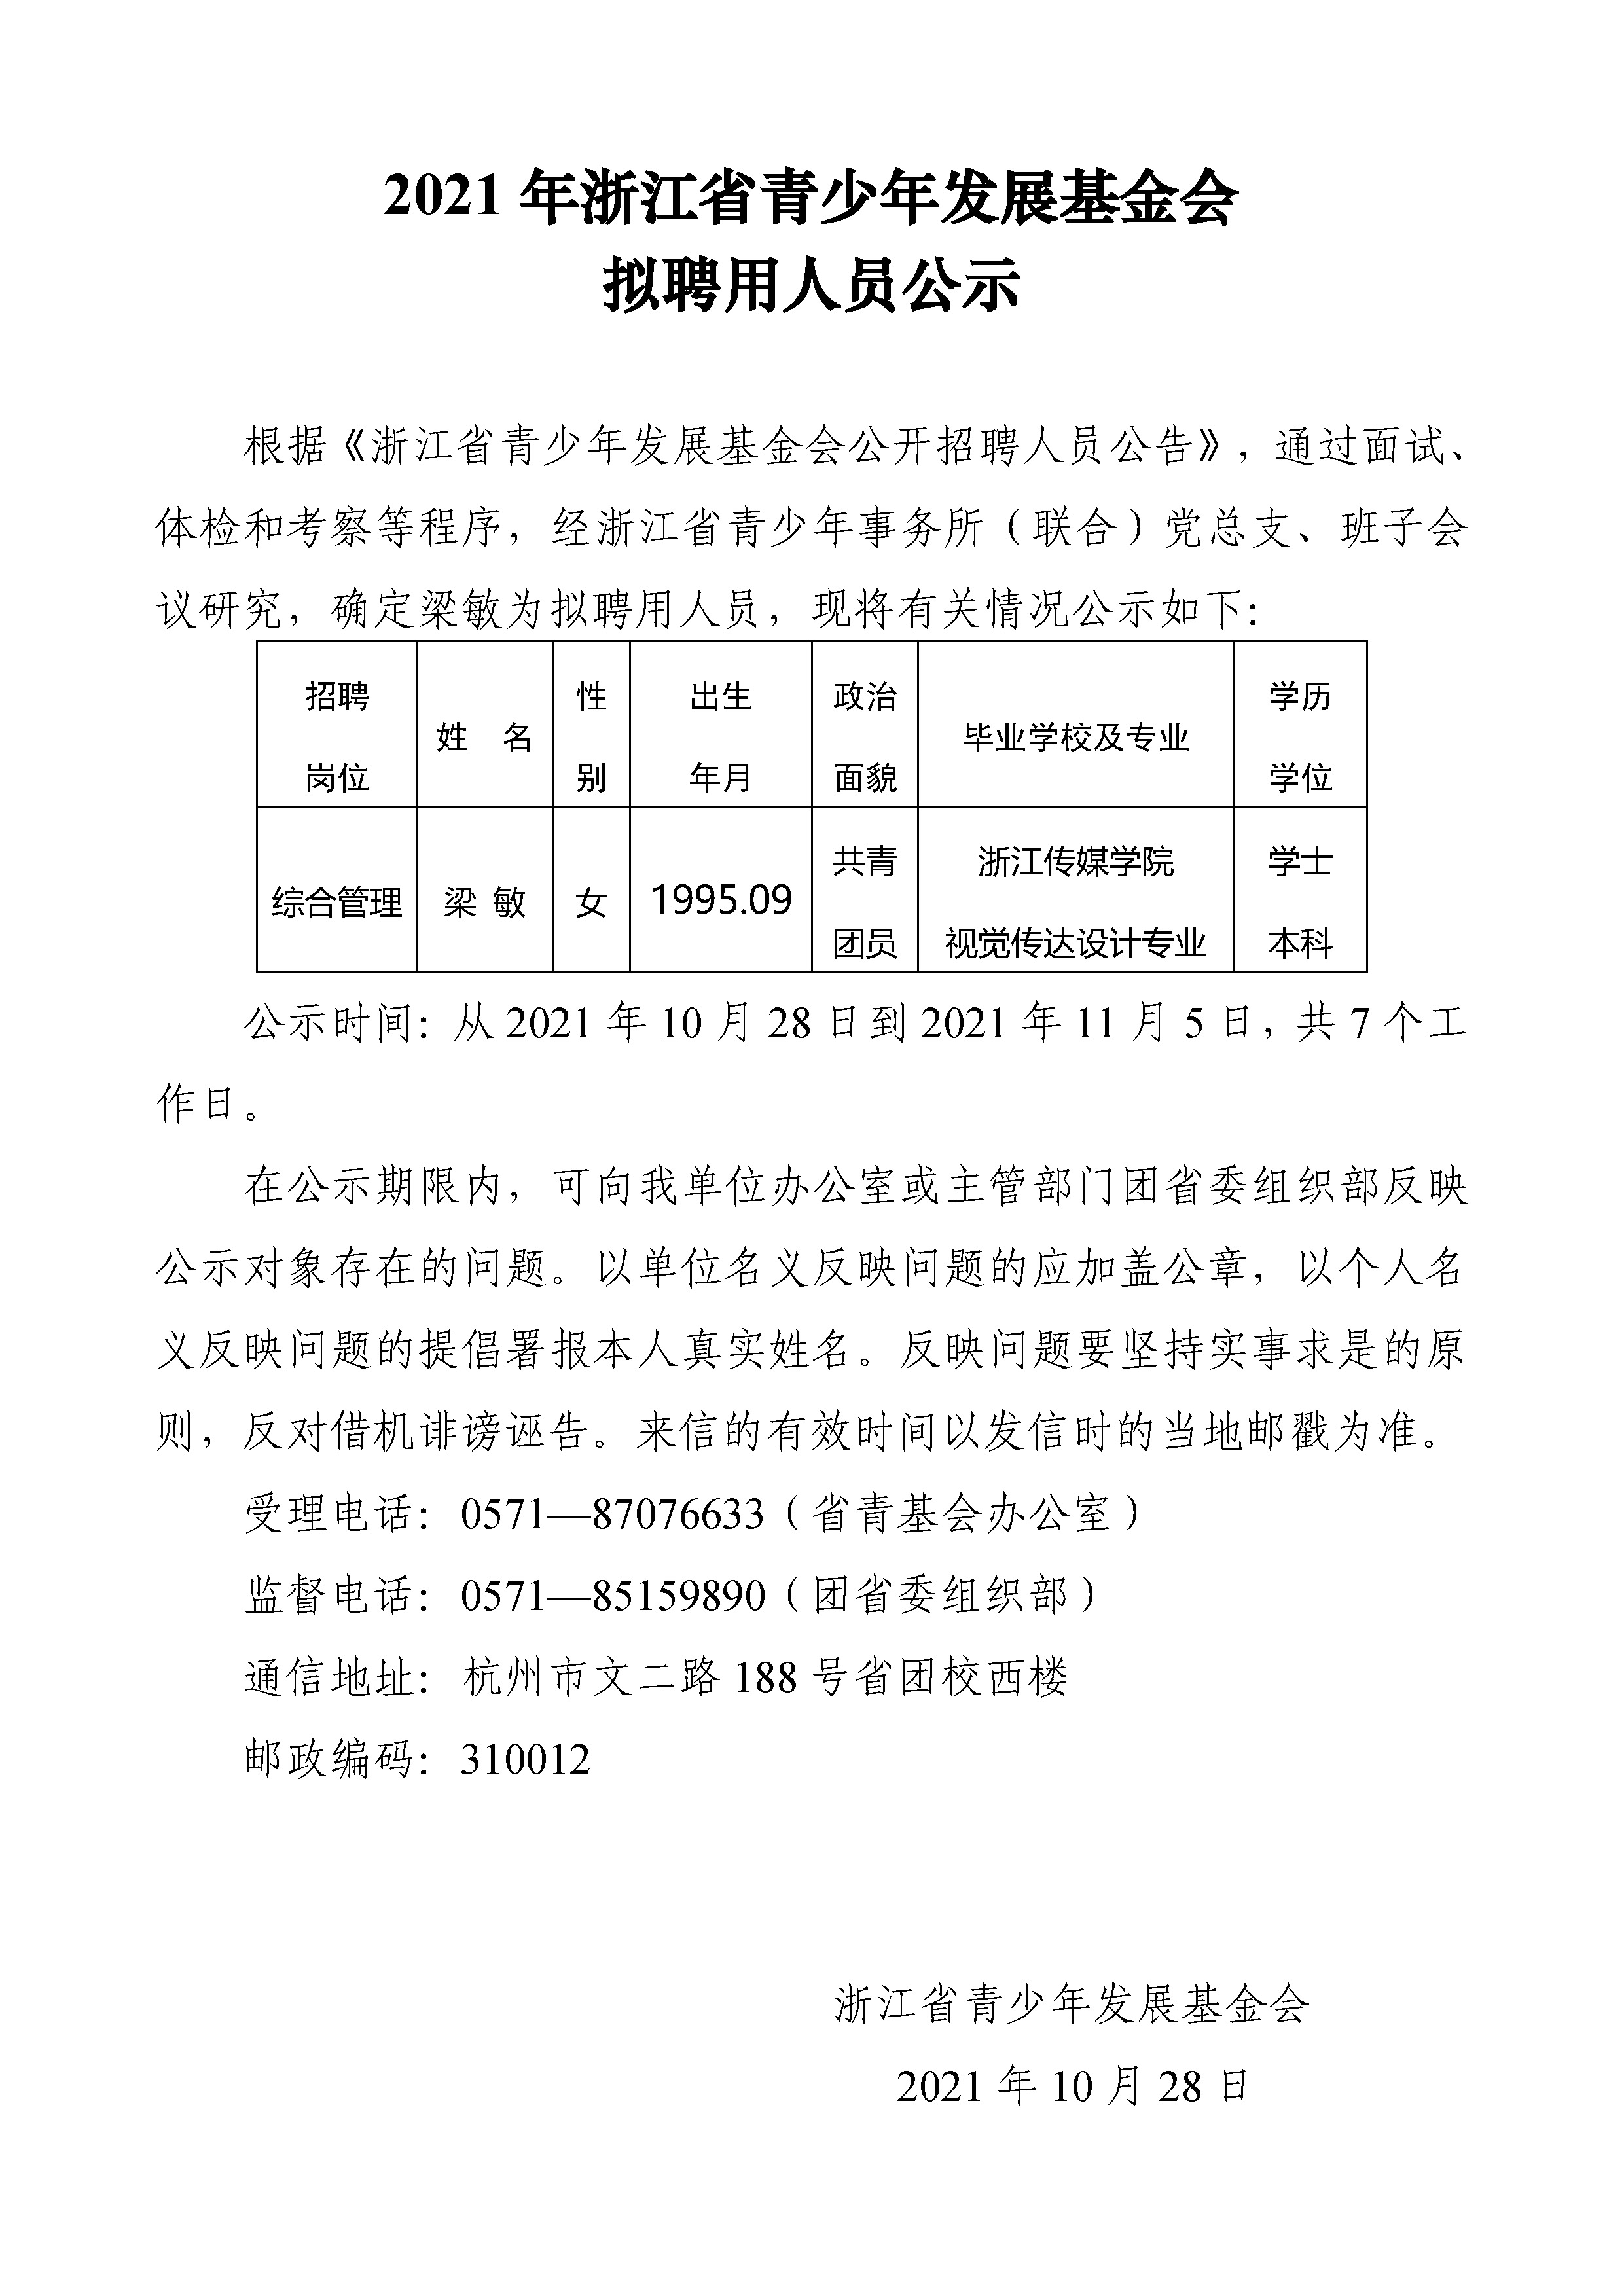 2021年浙江省发展基金会拟聘用人员公示（定稿）.jpg